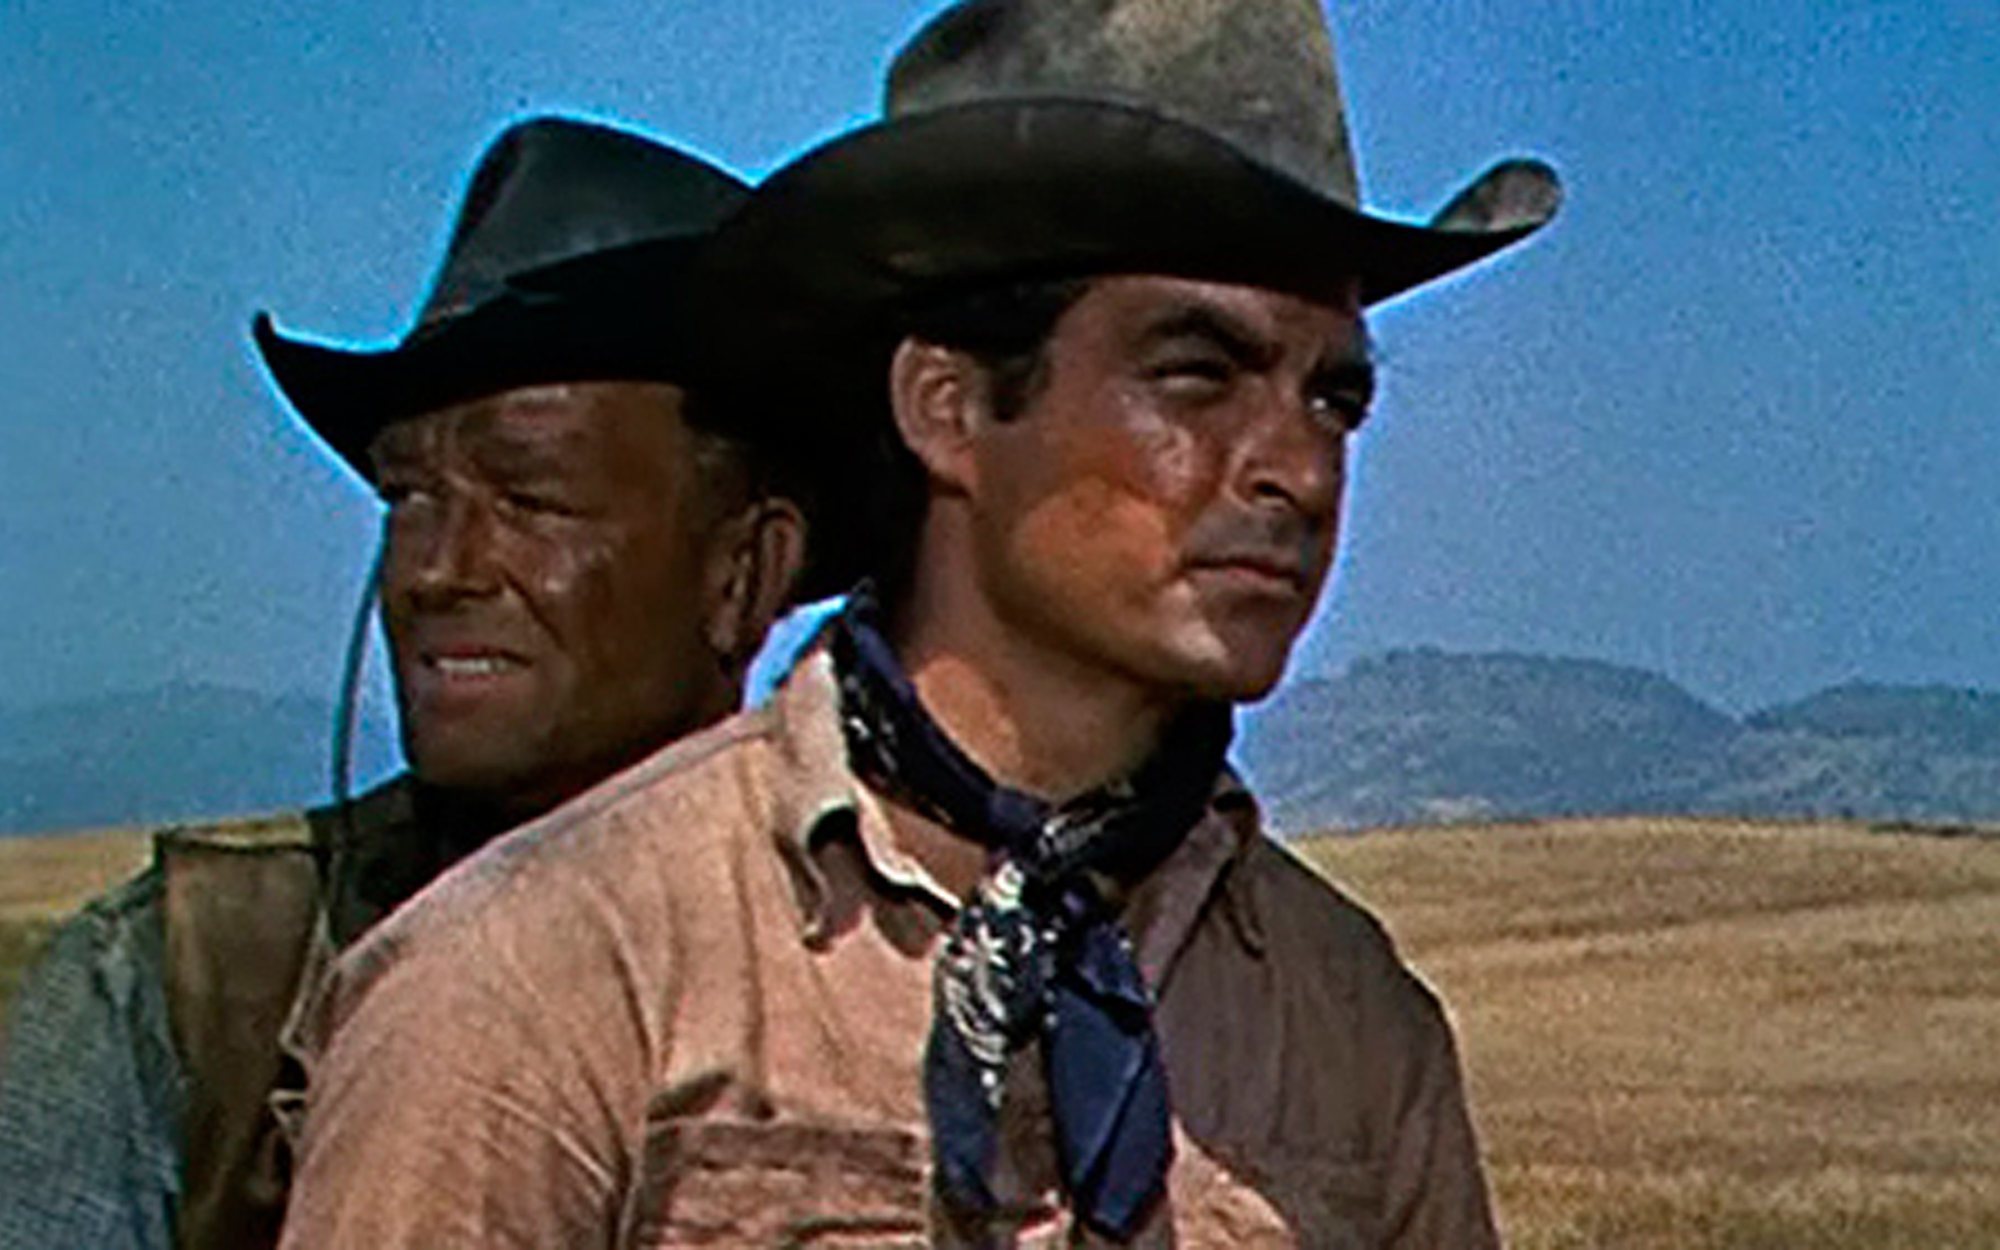 Trece se lleva la emisión más vista del día con su cine western y la película "Muerte al atardecer" (5,4%)